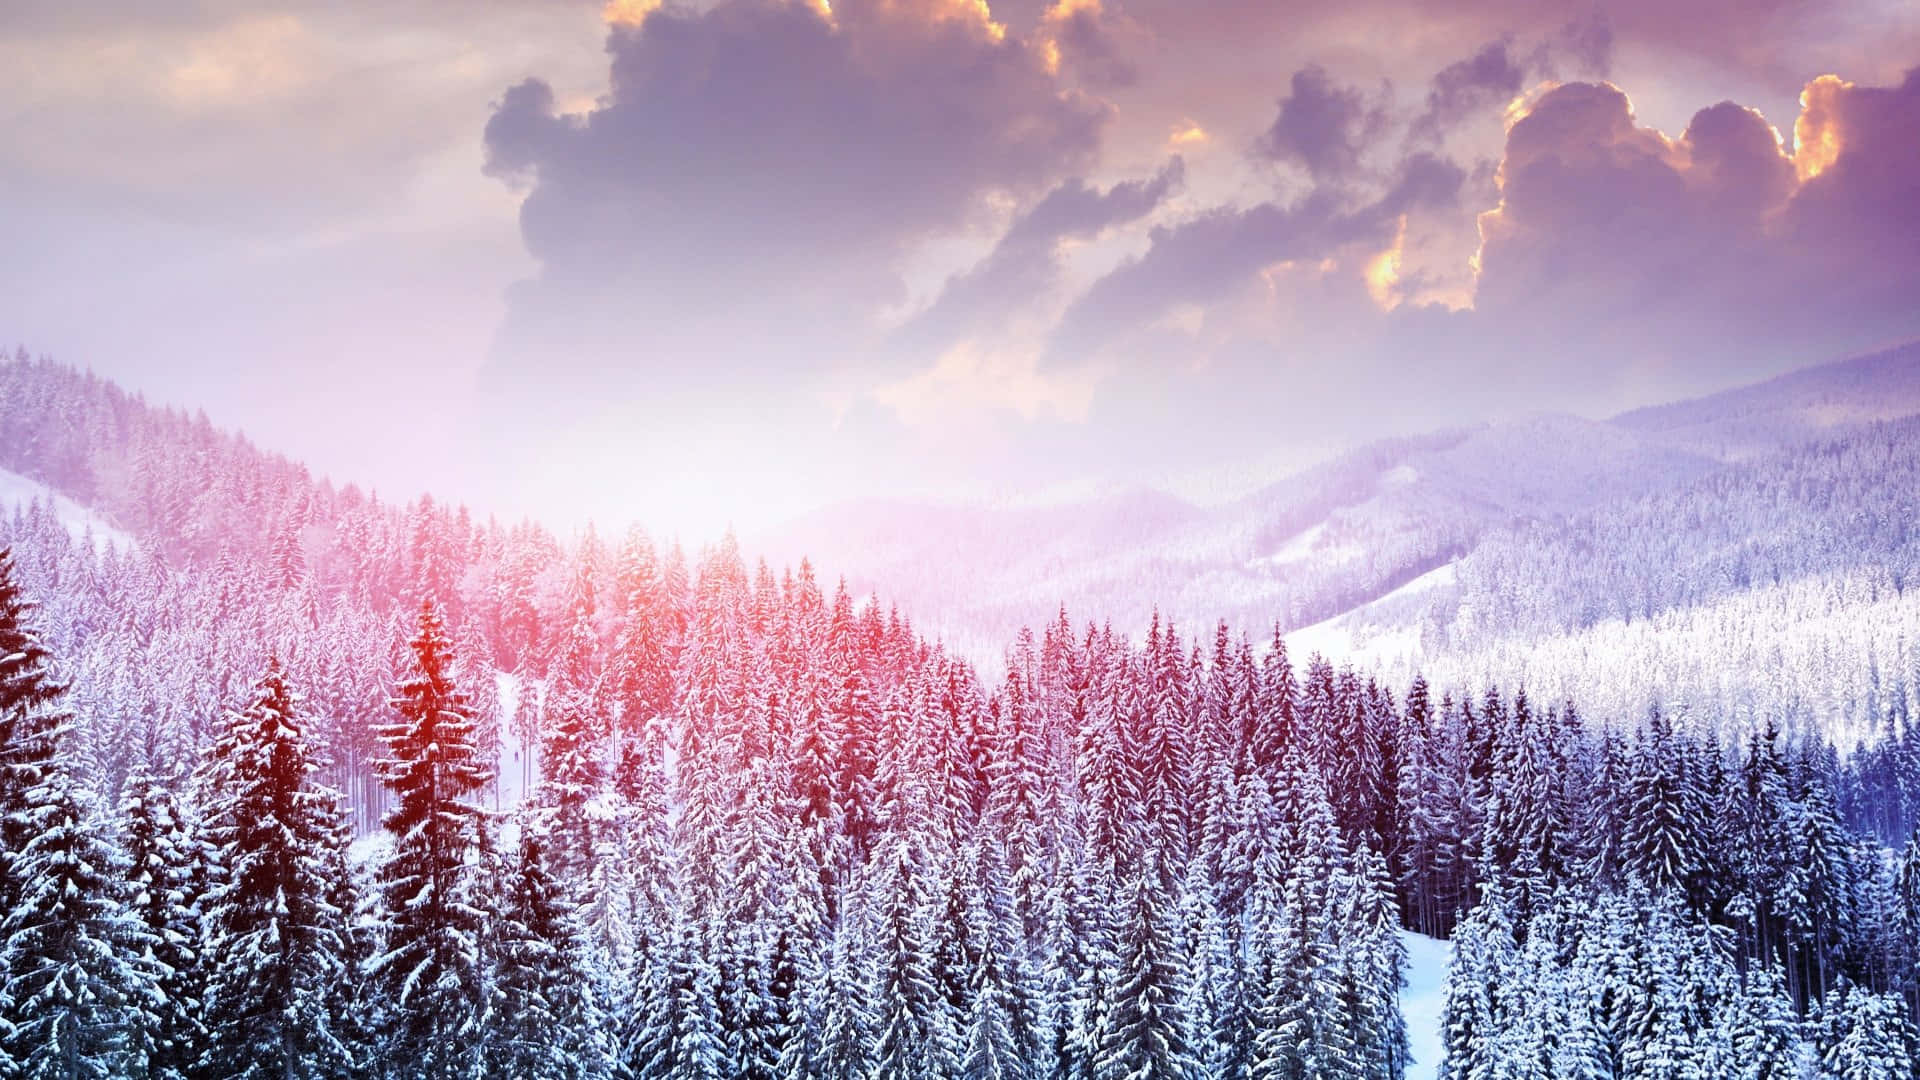 Einblick Auf Schneebedeckte Berge Erstreckte Sich In All Ihrer Winterlichen Pracht.